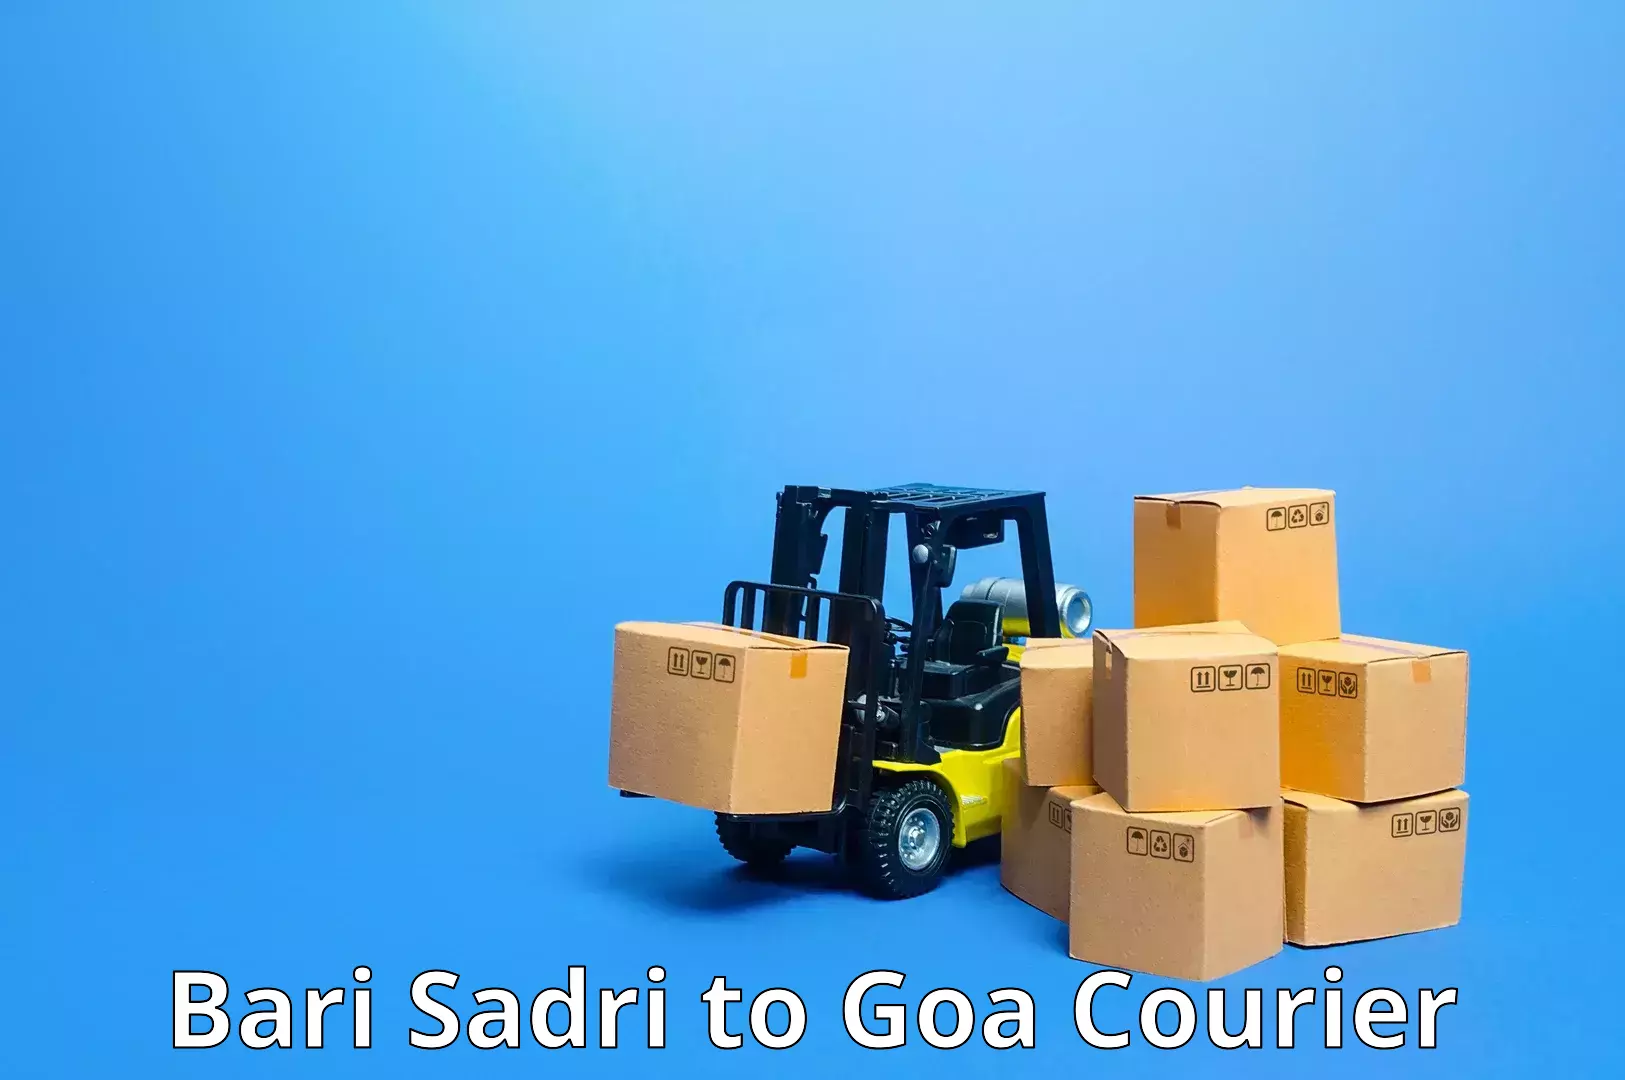 Global freight services Bari Sadri to Margao